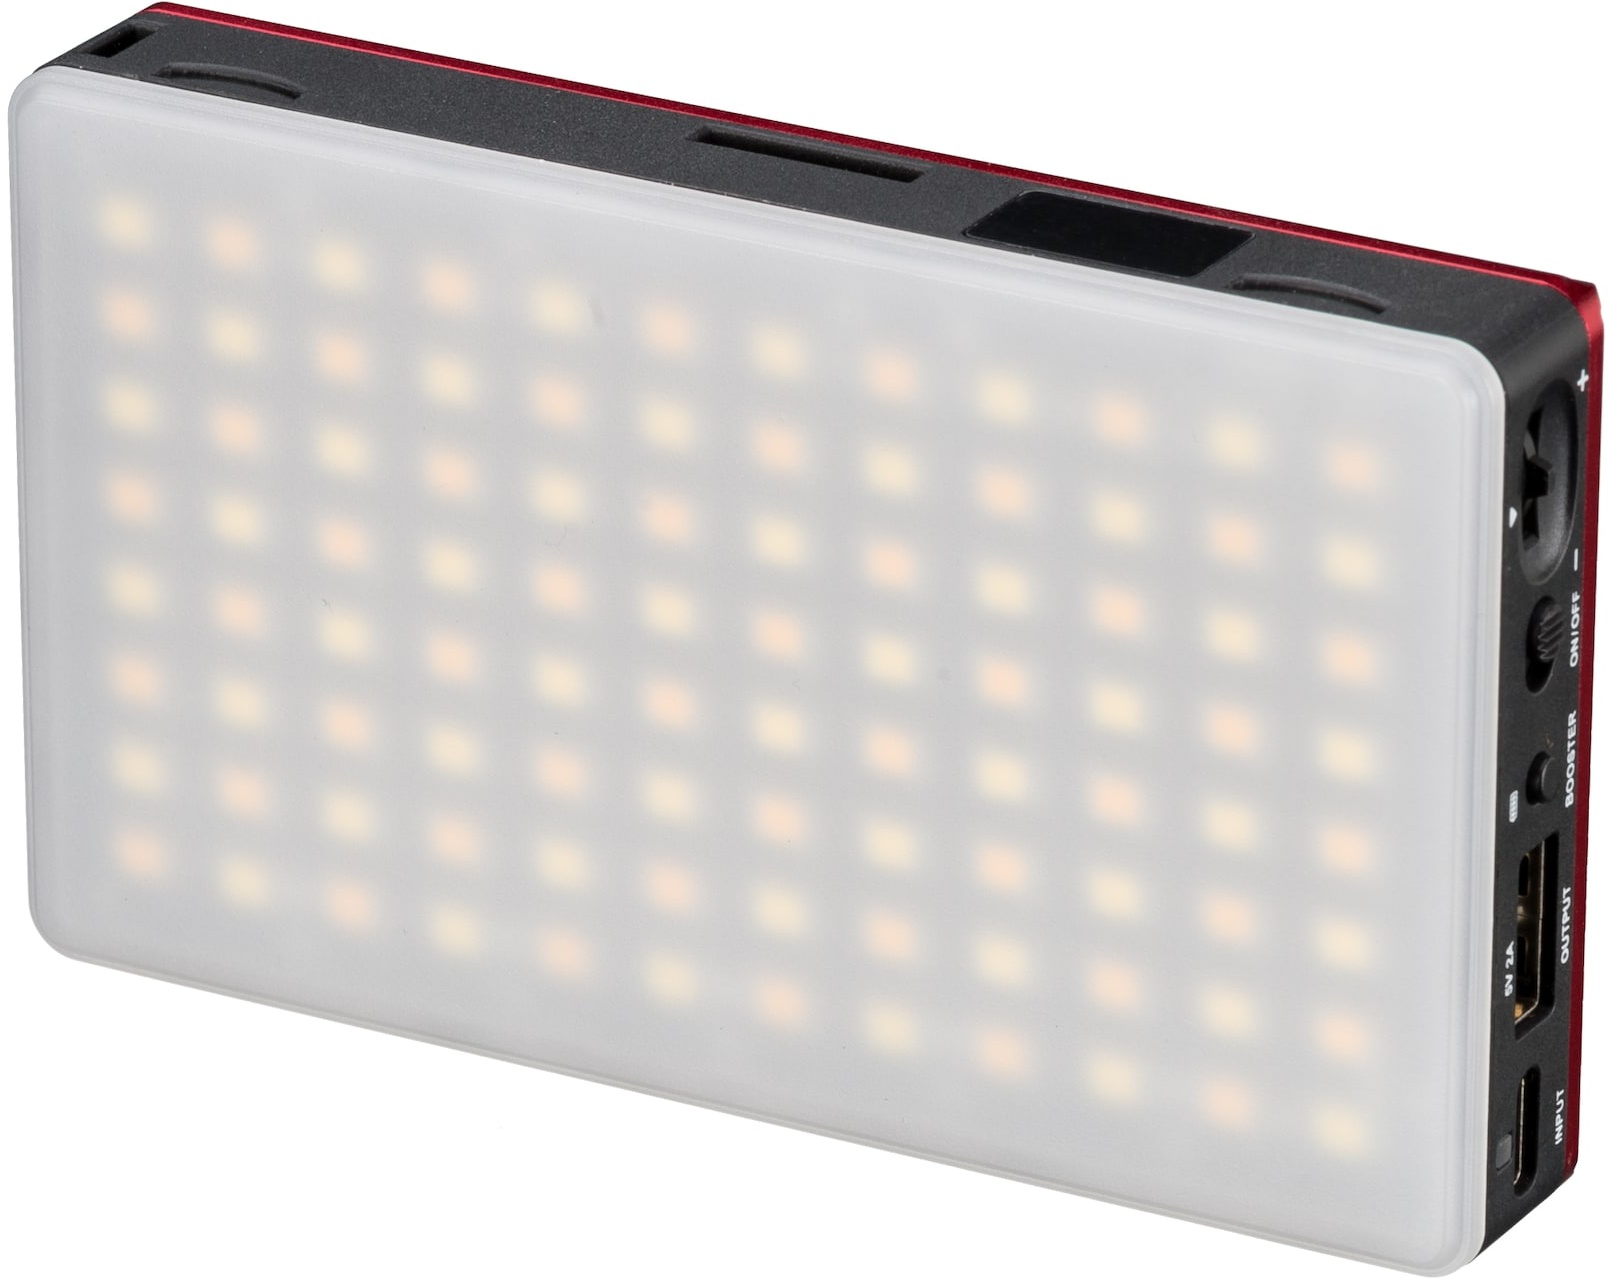 BRESSER Pocket LED 9W Bi-Color Dauerlicht für den mobilen Einsatz und Smartphone-Fotografie